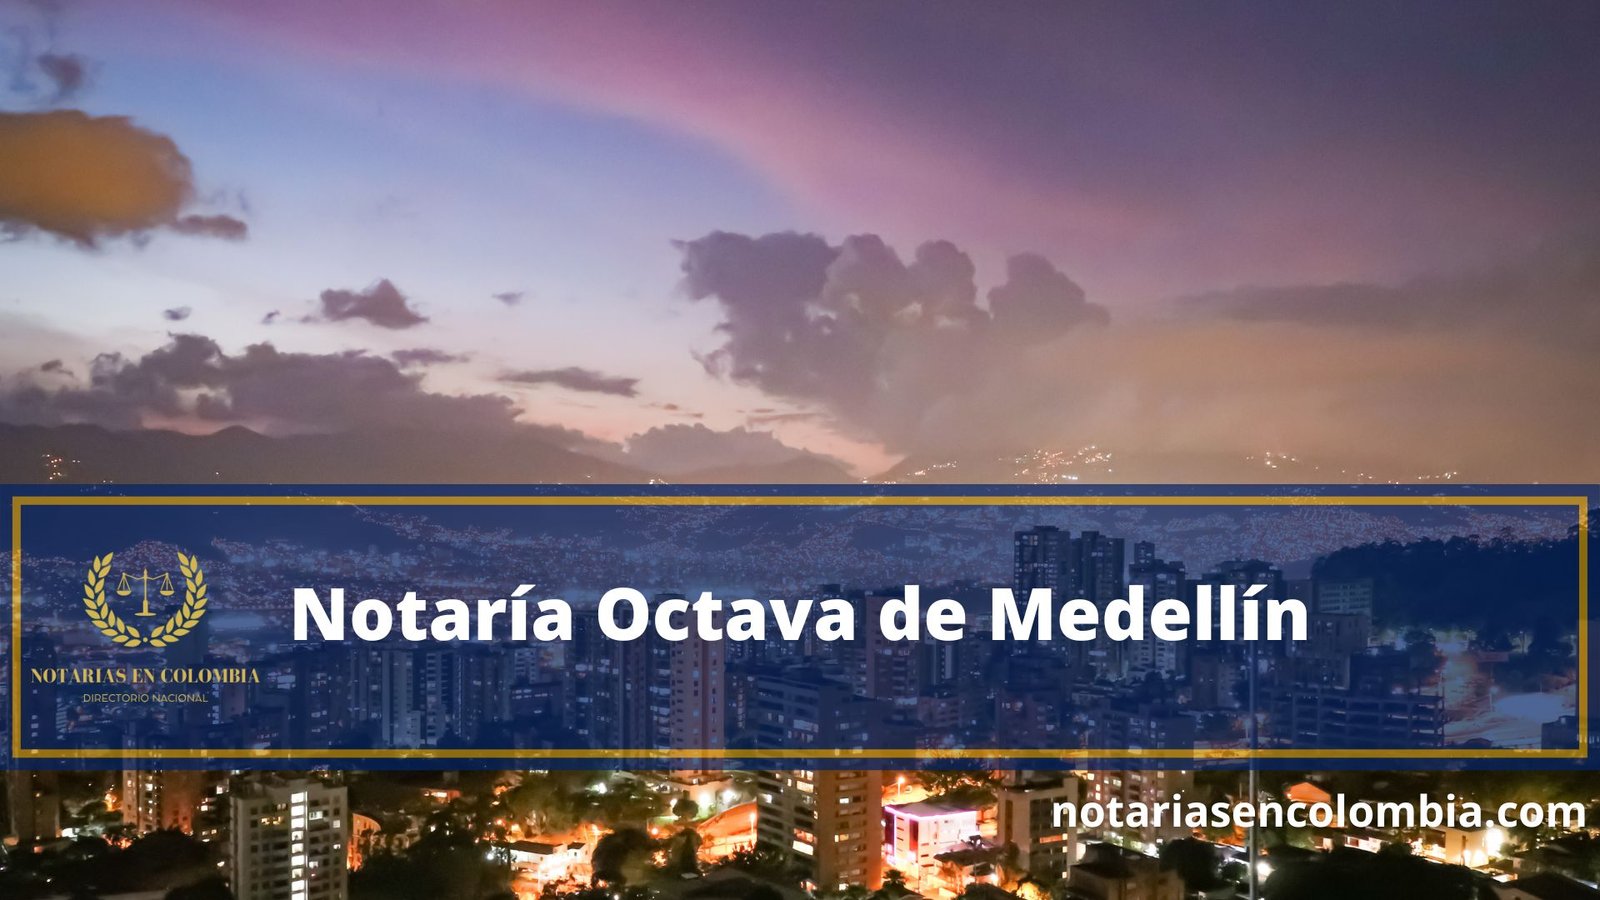 Notaría Octava de Medellín - Notarias en Colombia